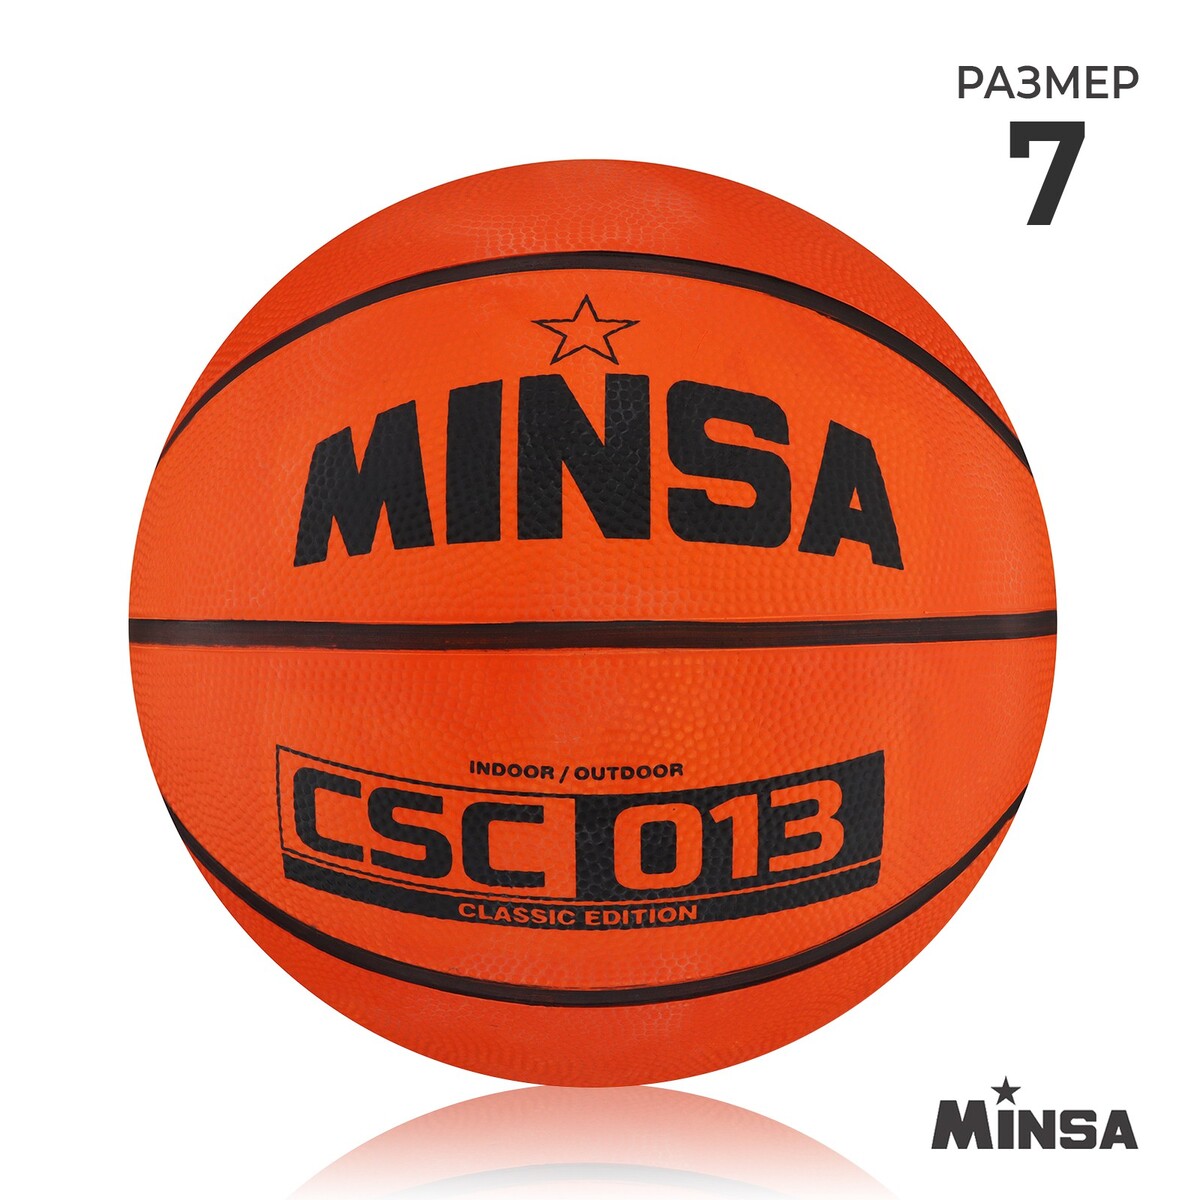 Мяч баскетбольный minsa csc 013, пвх, клееный, 8 панелей, р. 7 мяч баскетбольный любительский molten b7g2000 р 7